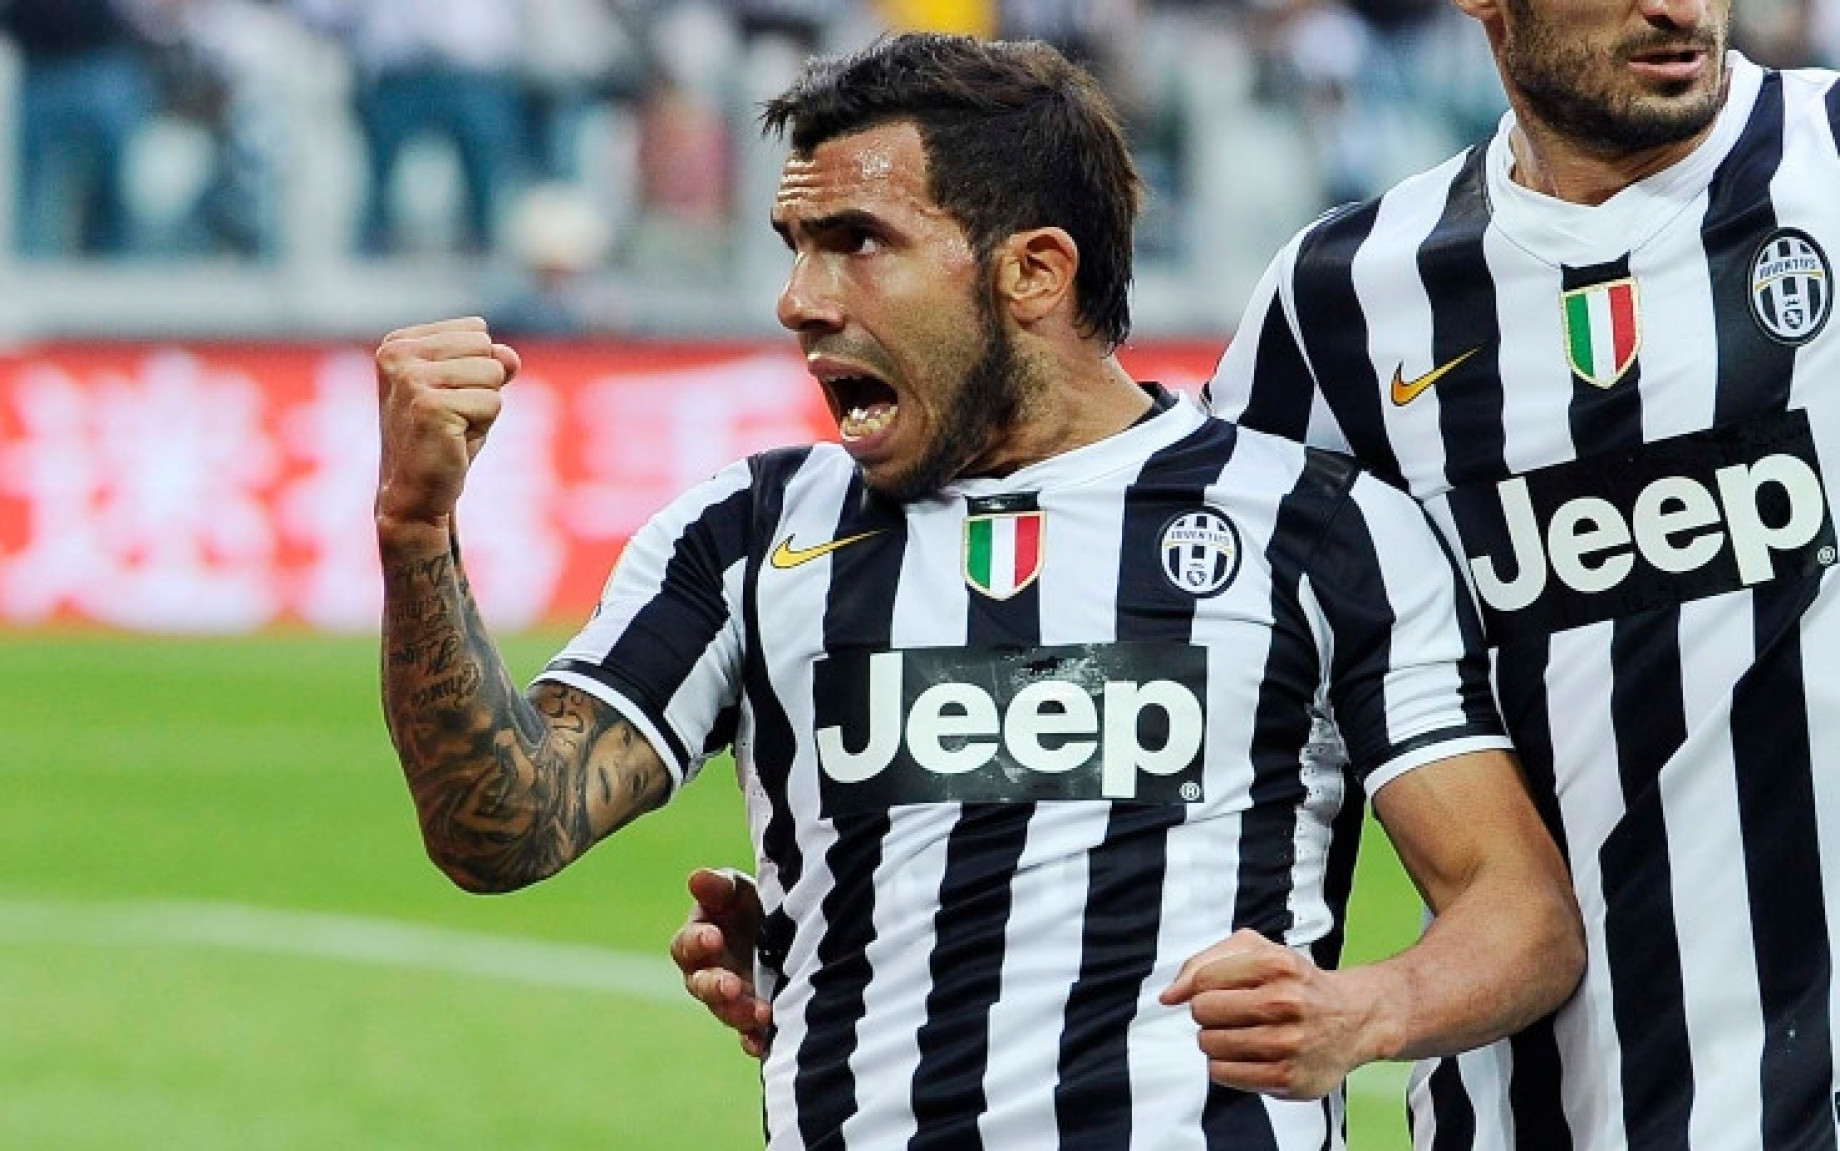 Tevez_Juventus_IMAGE_2013_14.jpg